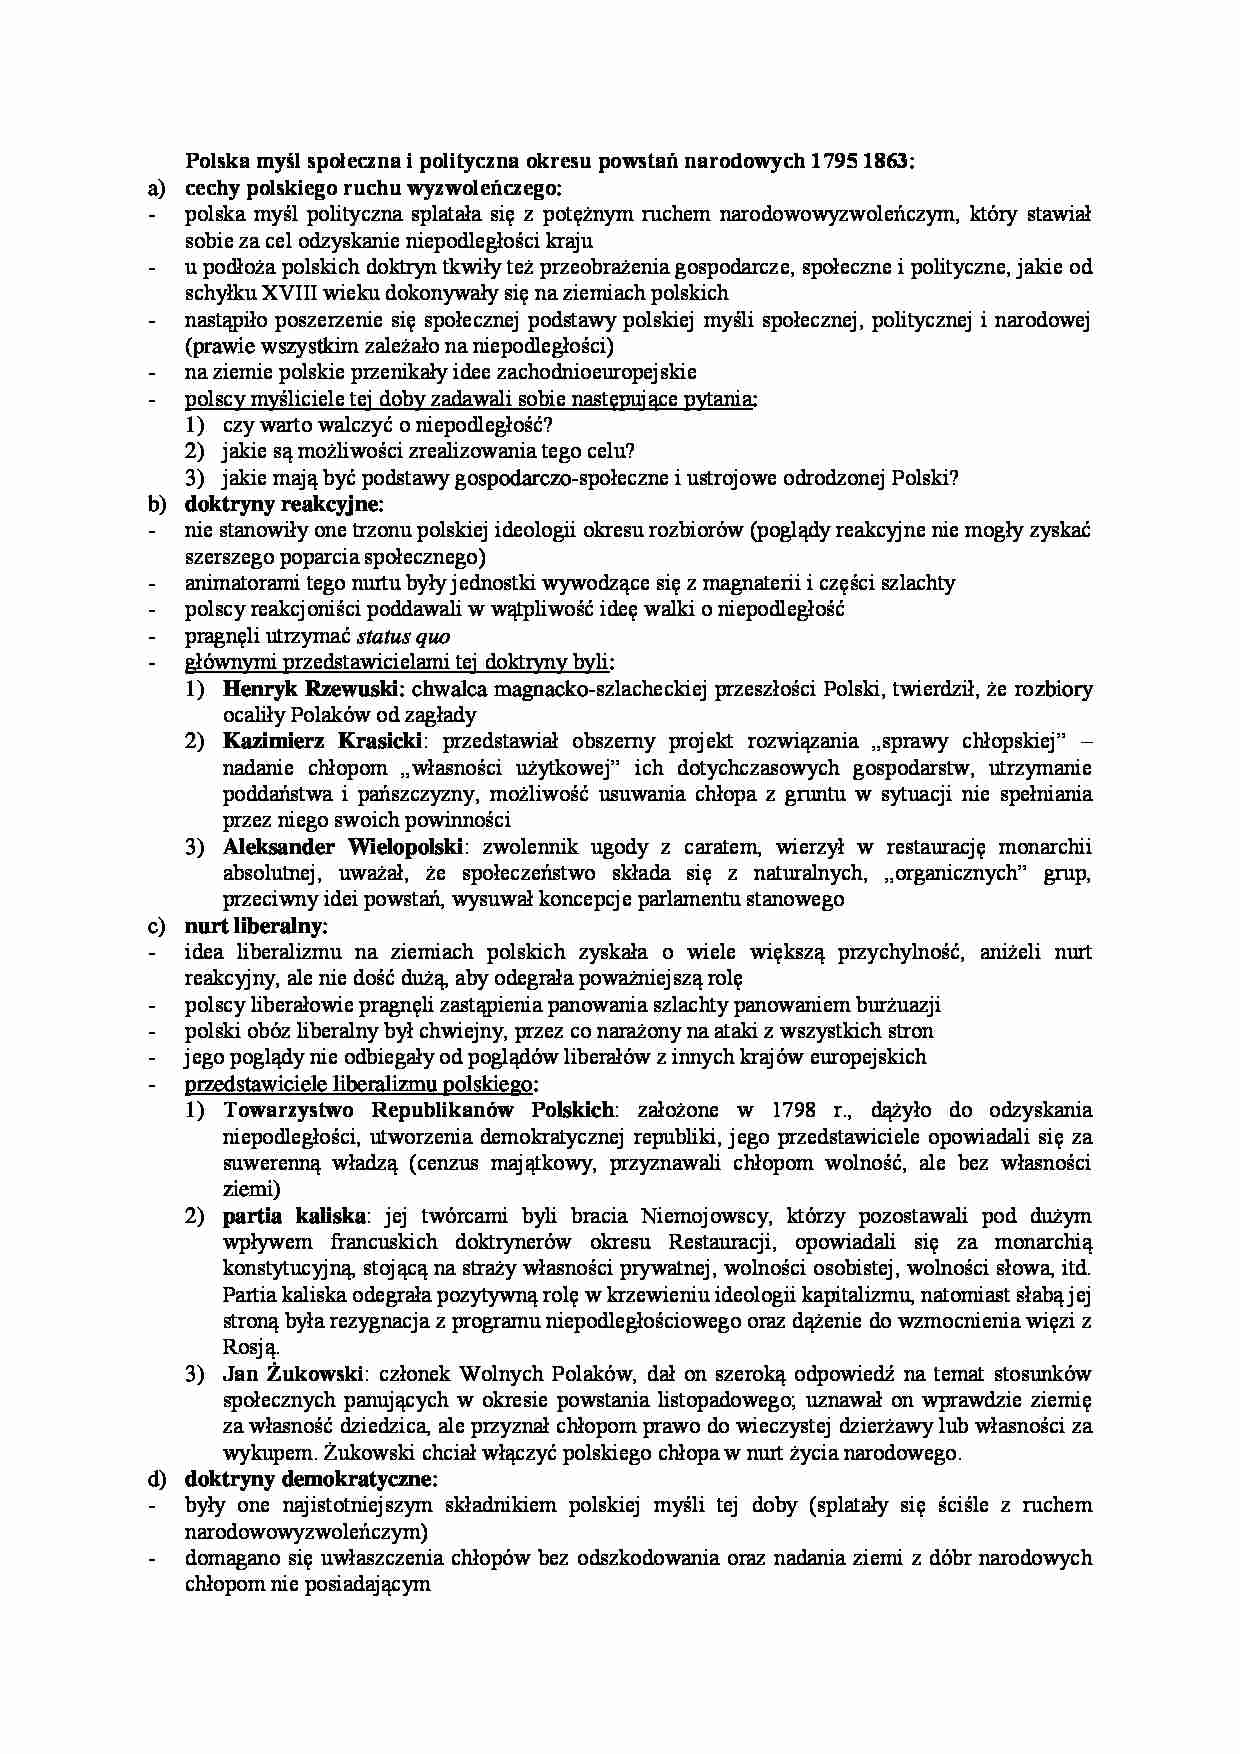 Polska myśl społeczna i polityczna okresu powstań narodowych - wykład - strona 1